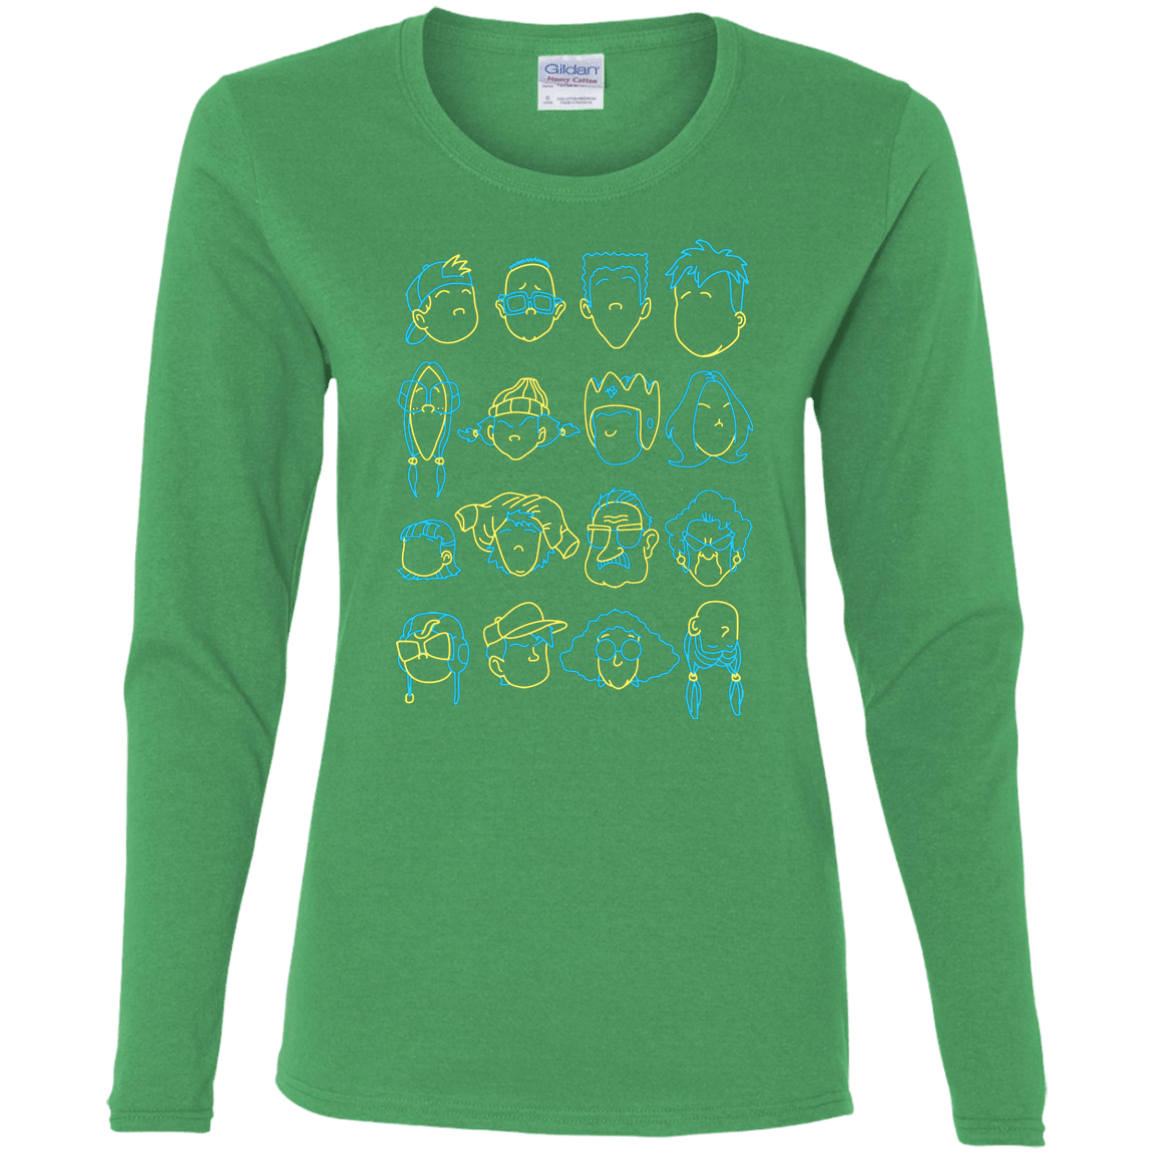 T-Shirts Irish Green / S RECESS Women's Long Sleeve T-Shirt